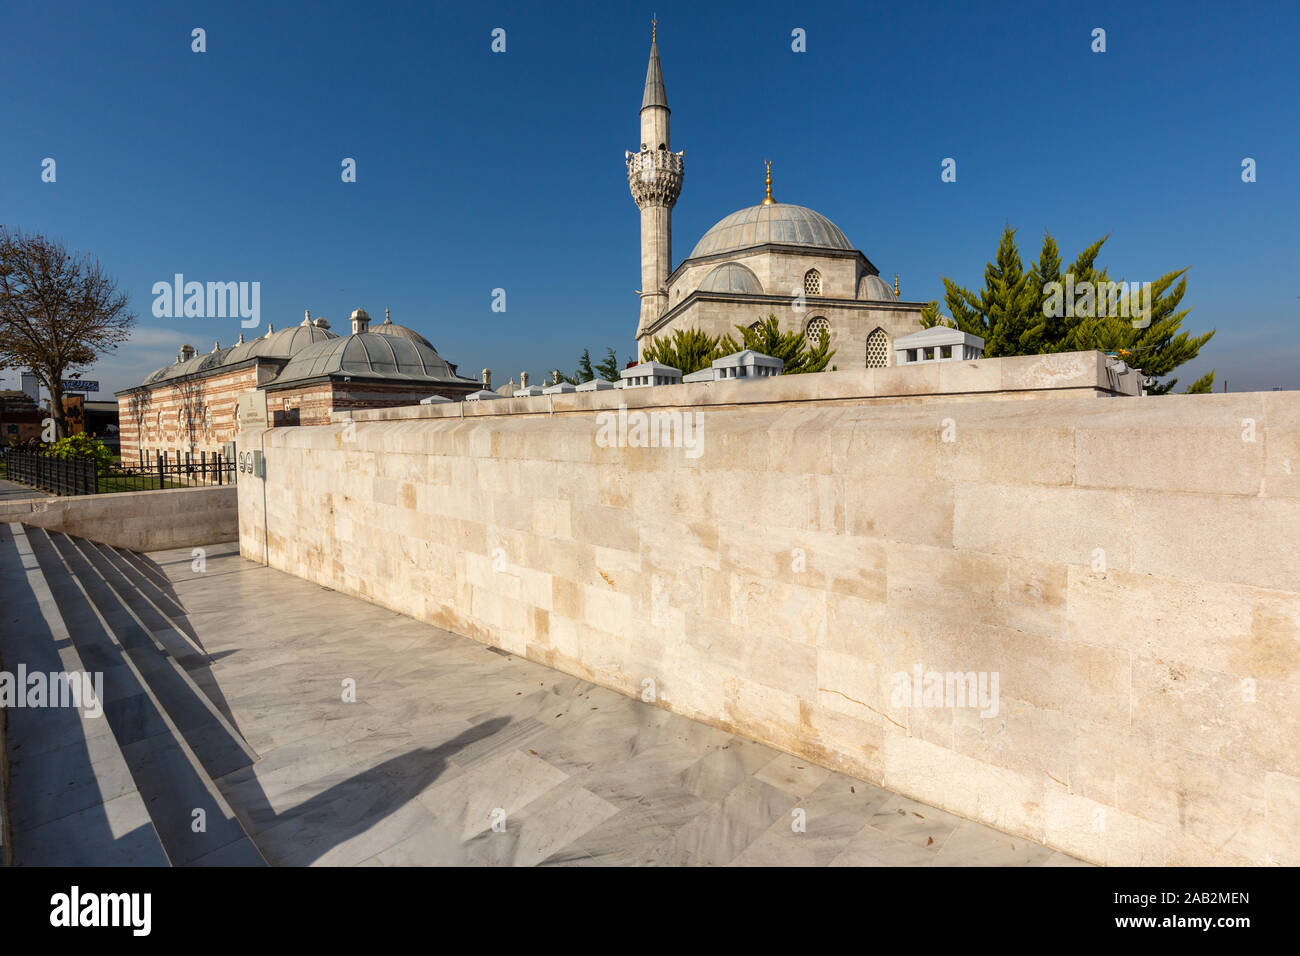 Minarett und die Wände von Semsi Pasa Cami in Uskudar Bezirk, Istanbul. Stockfoto